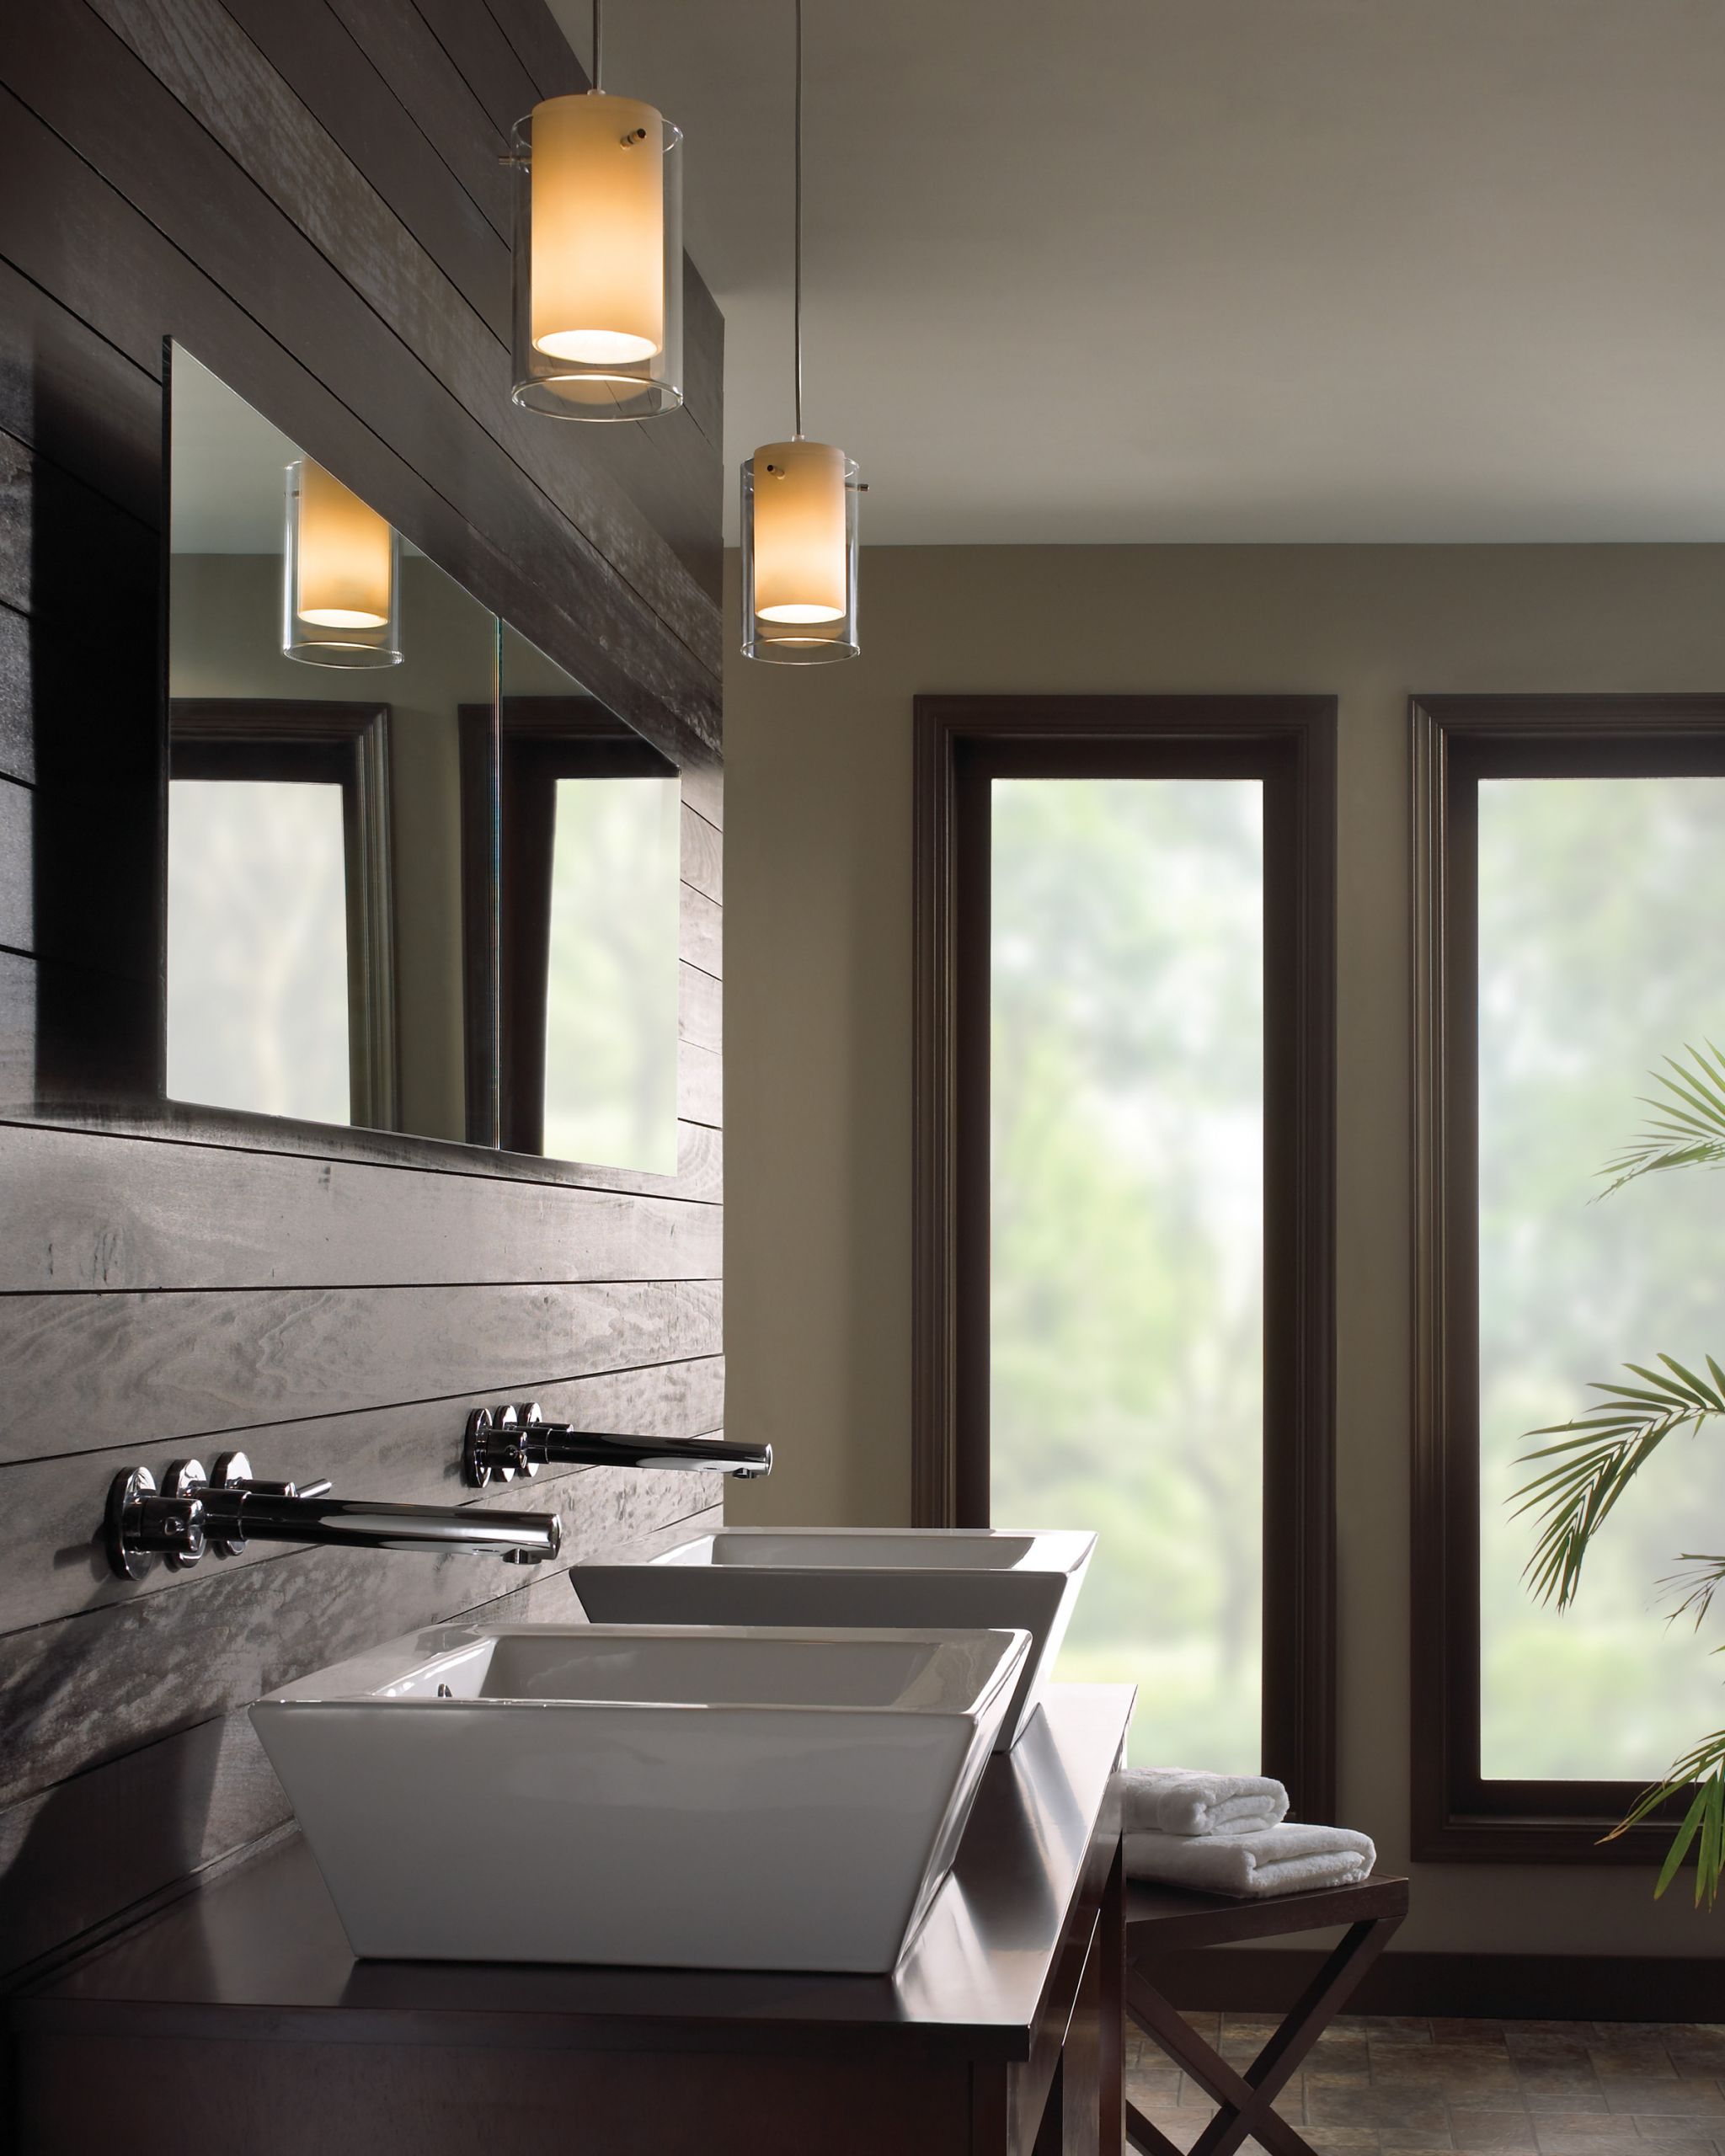 Bathroom Pendant Lights Over Vanity
 bathroom ideas